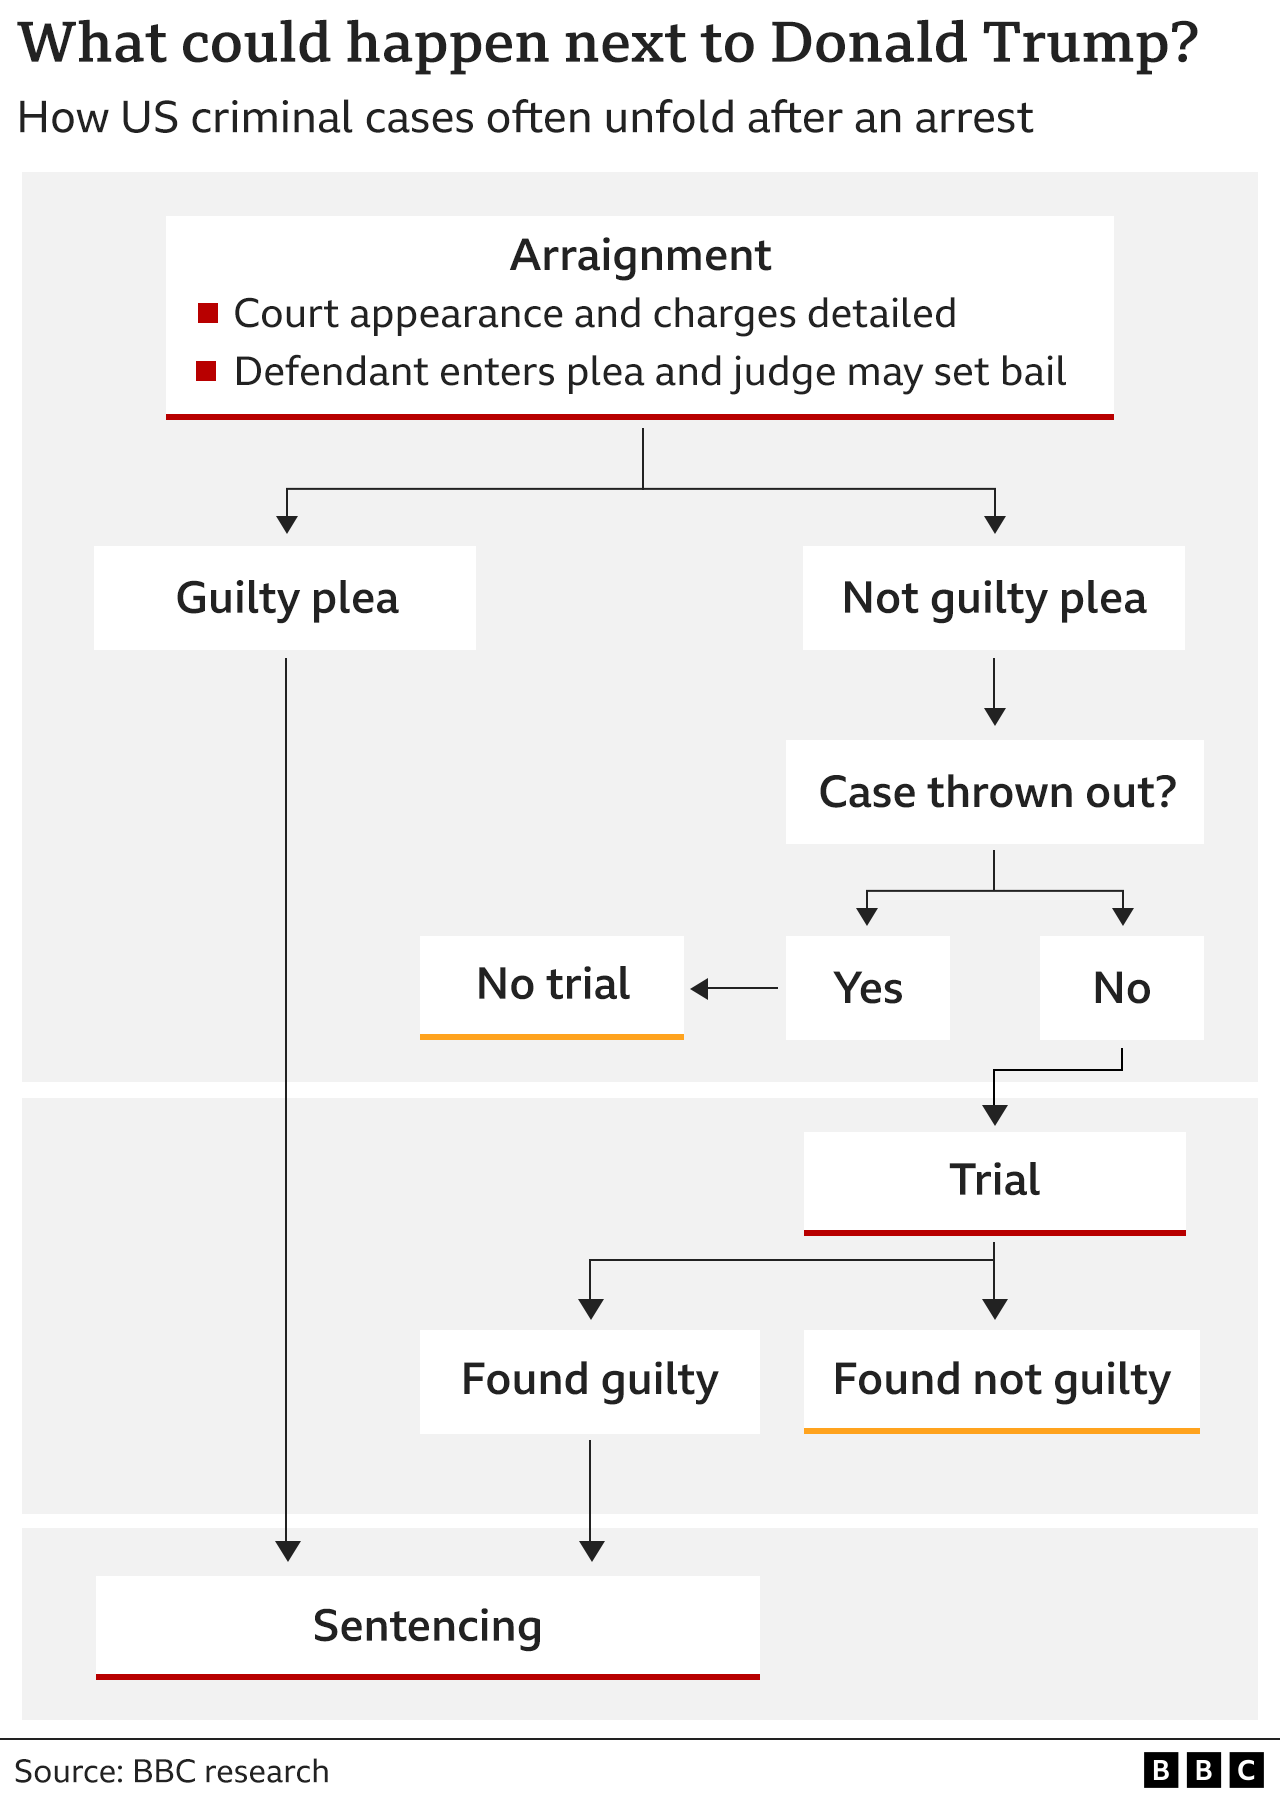 Инфографика BBC, показывающая возможные следующие шаги после предъявления обвинения Дональду Трампу, в котором он планирует не признавать себя виновным